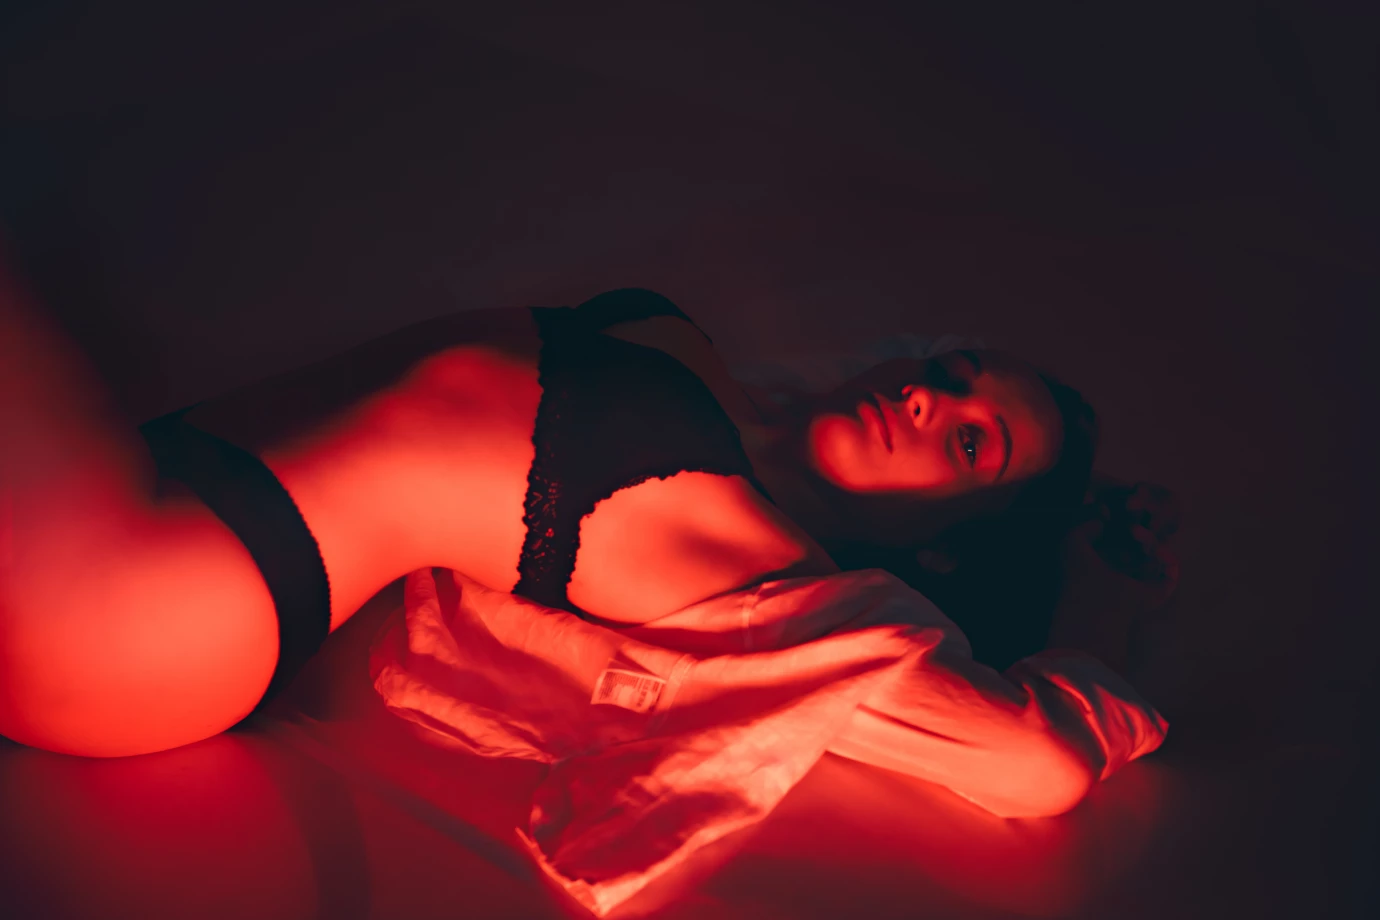 fotograf bialystok foto-pocisk-mlazowski portfolio sesja kobieca sensualna boudair sexy